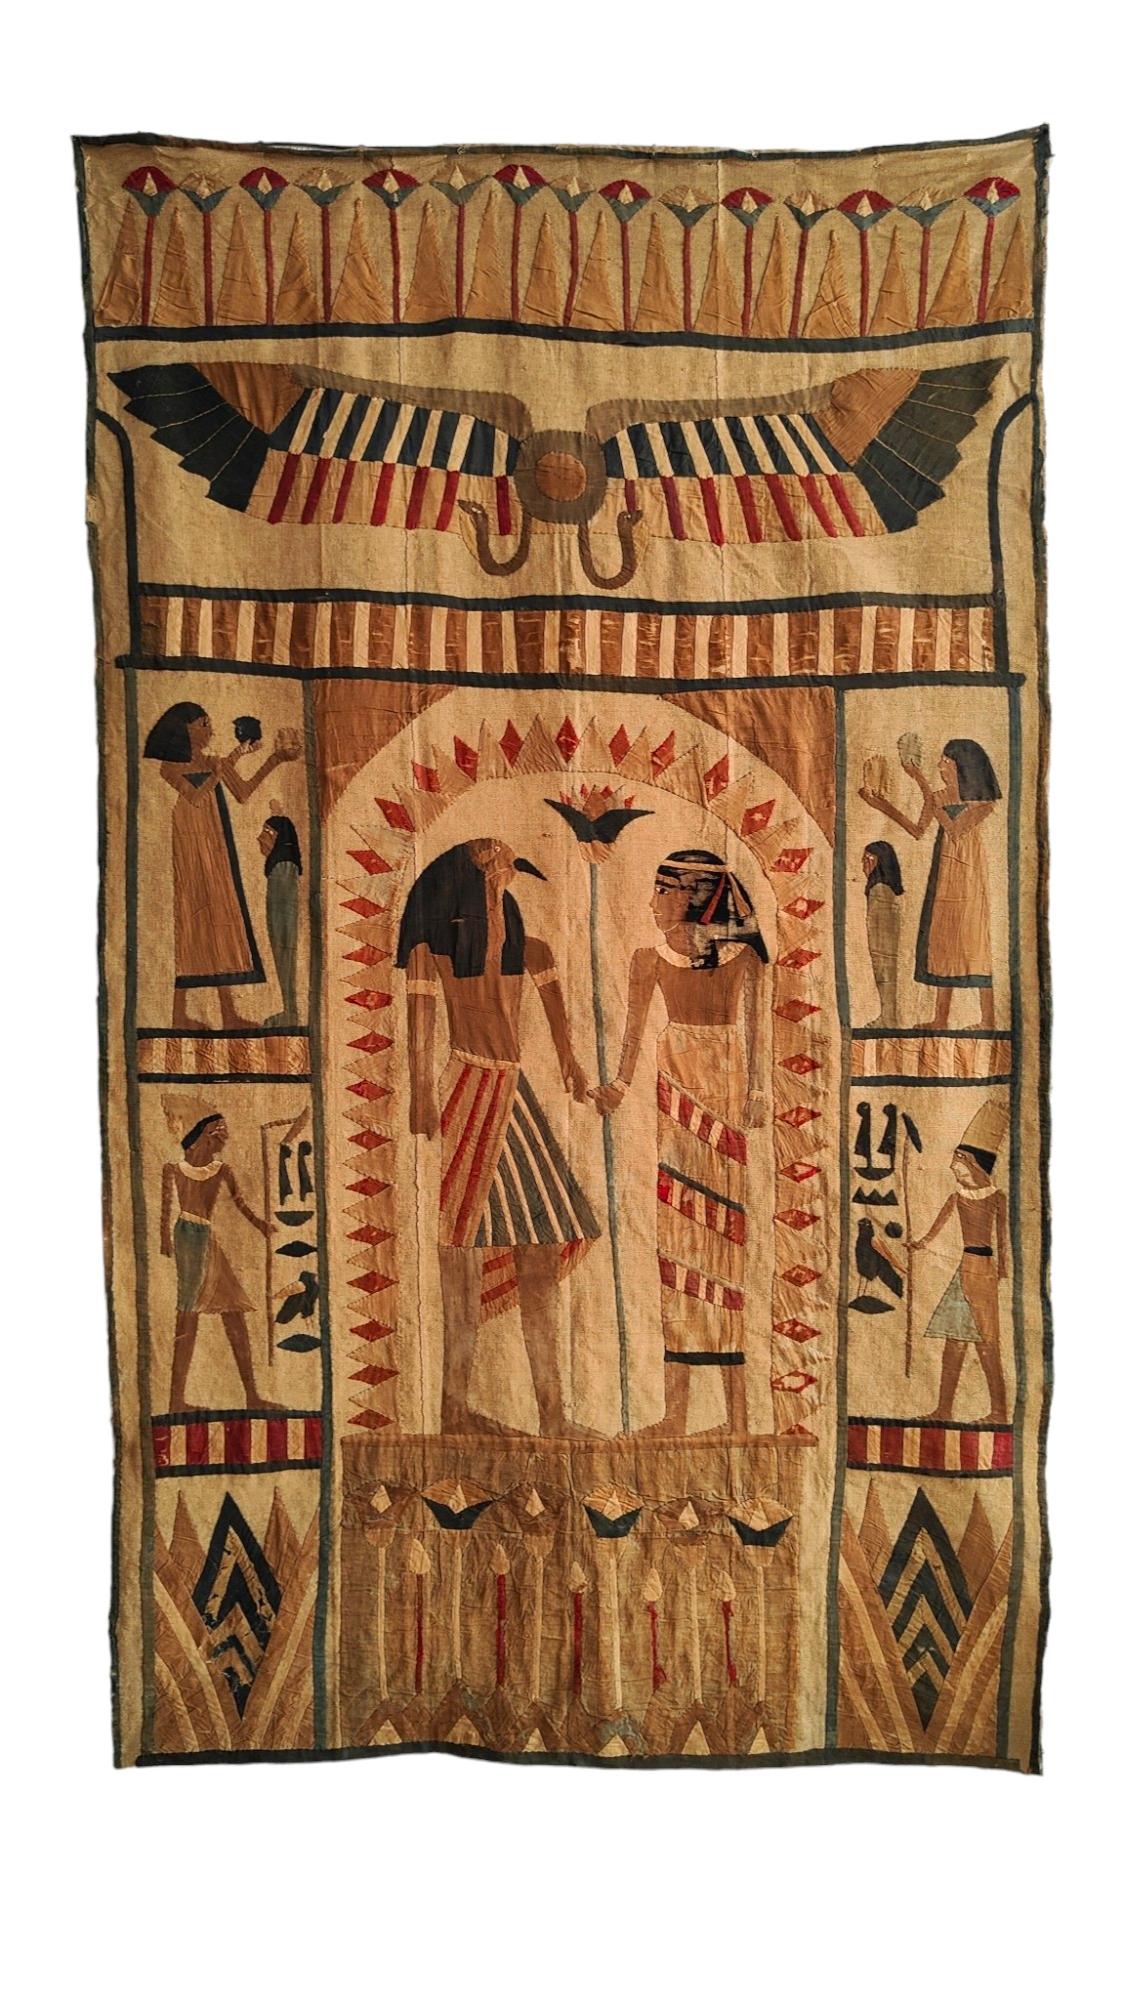 Altägyptischer Wandteppich 1920er Jahre
DEKORATIVER WANDTEPPICH IM ÄGYPTISCHEN GESCHMACK, HERGESTELLT IN FRANKREICH IN DEN 20ER JAHREN MIT HANDGENÄHTEM STOFF. MASSNAHMEN: 230X137 CM